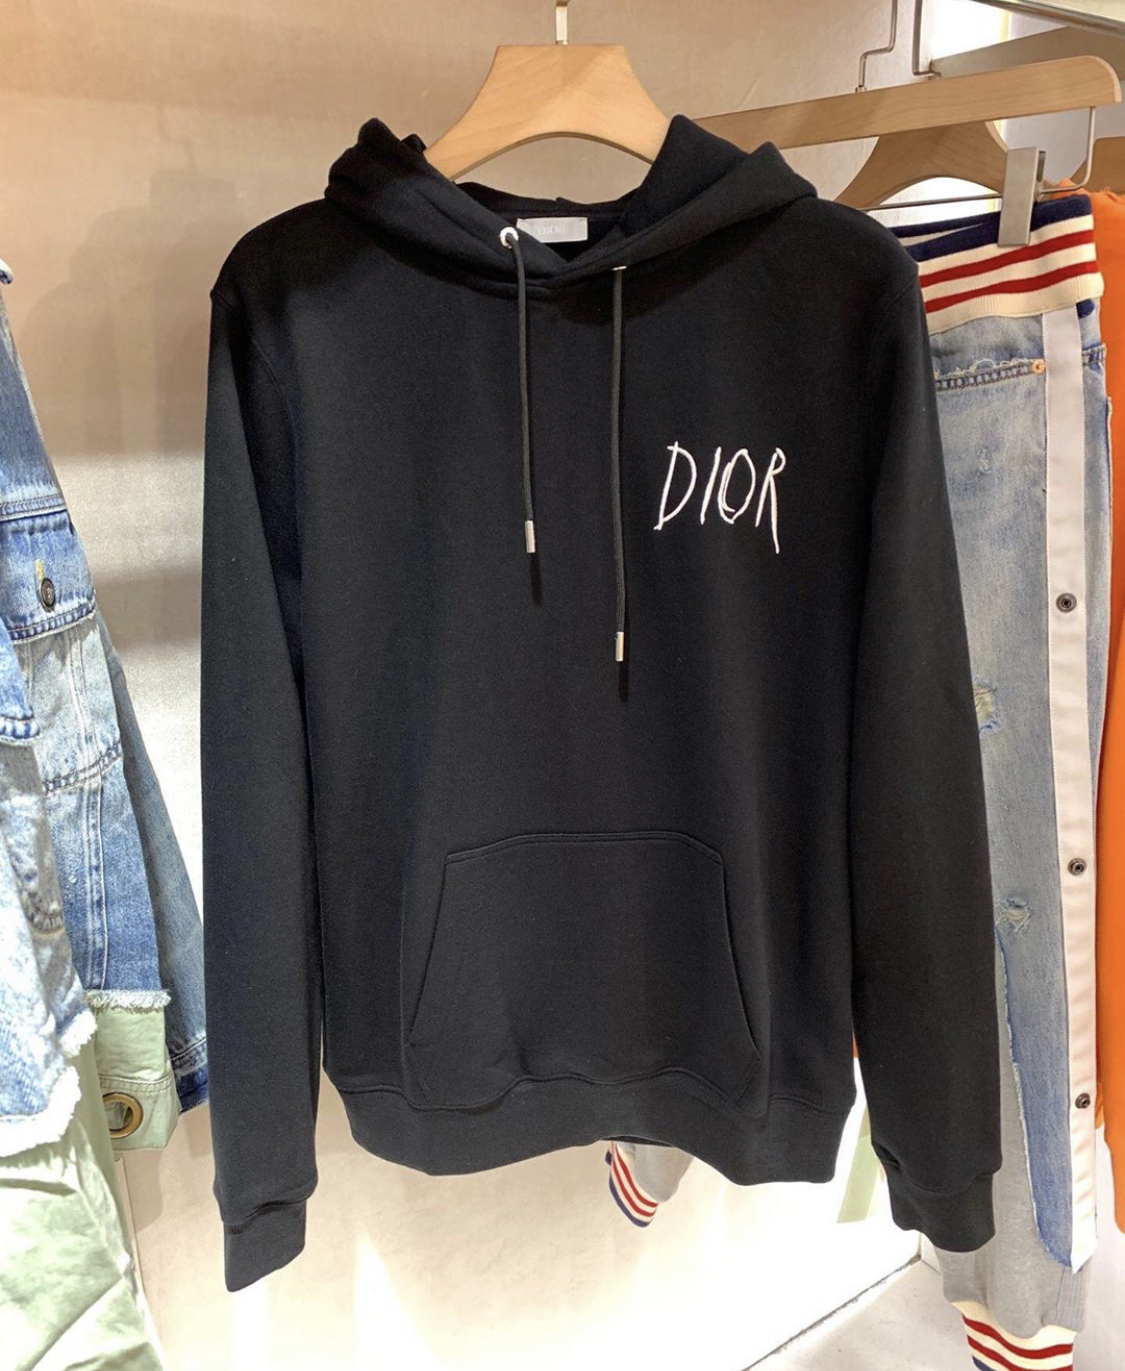 dior hoodie